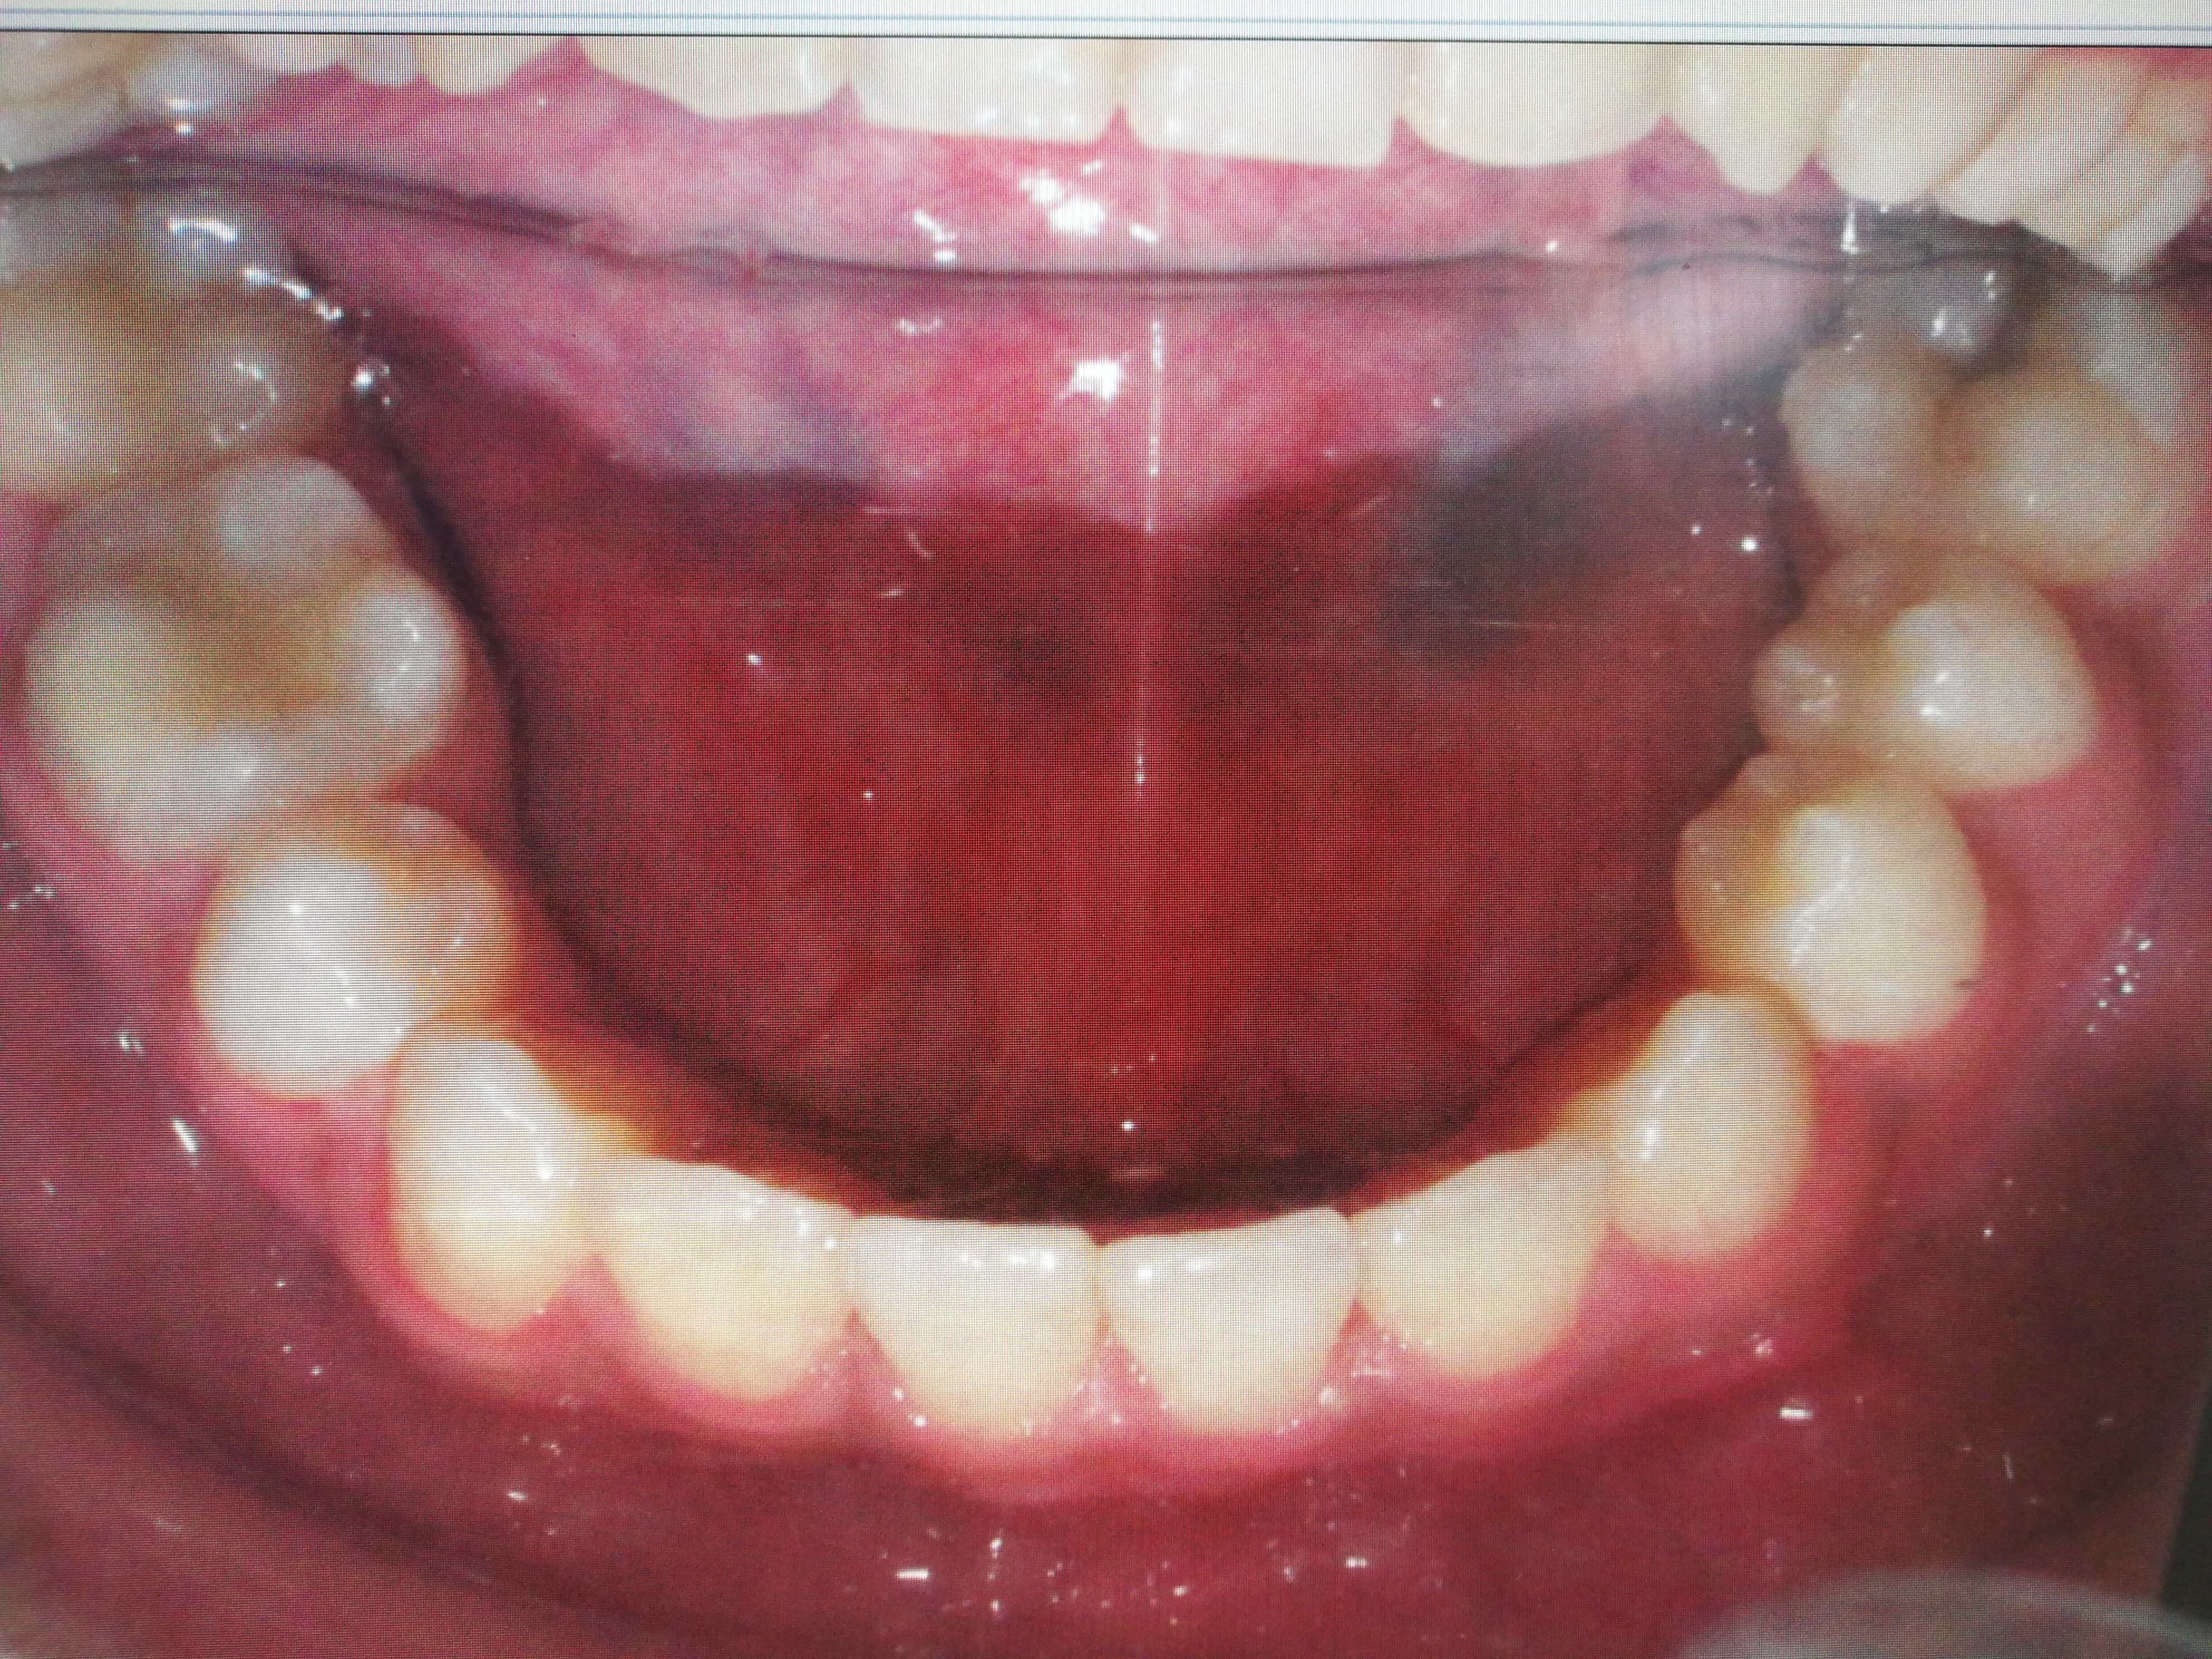 缺失的牙齿除了种植修复外,还能怎么办?